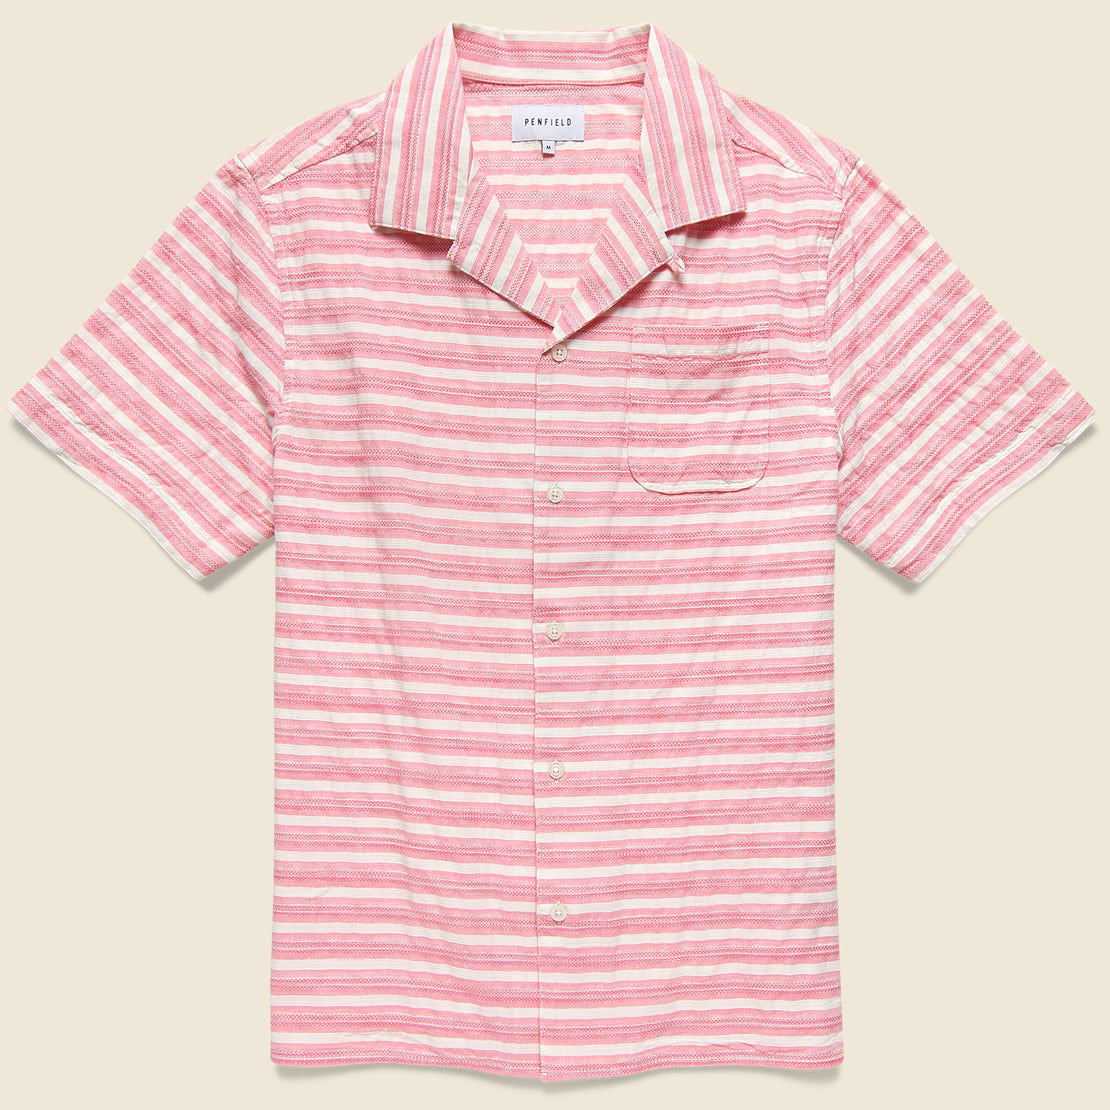 Penfield Hook Shirt - Pink